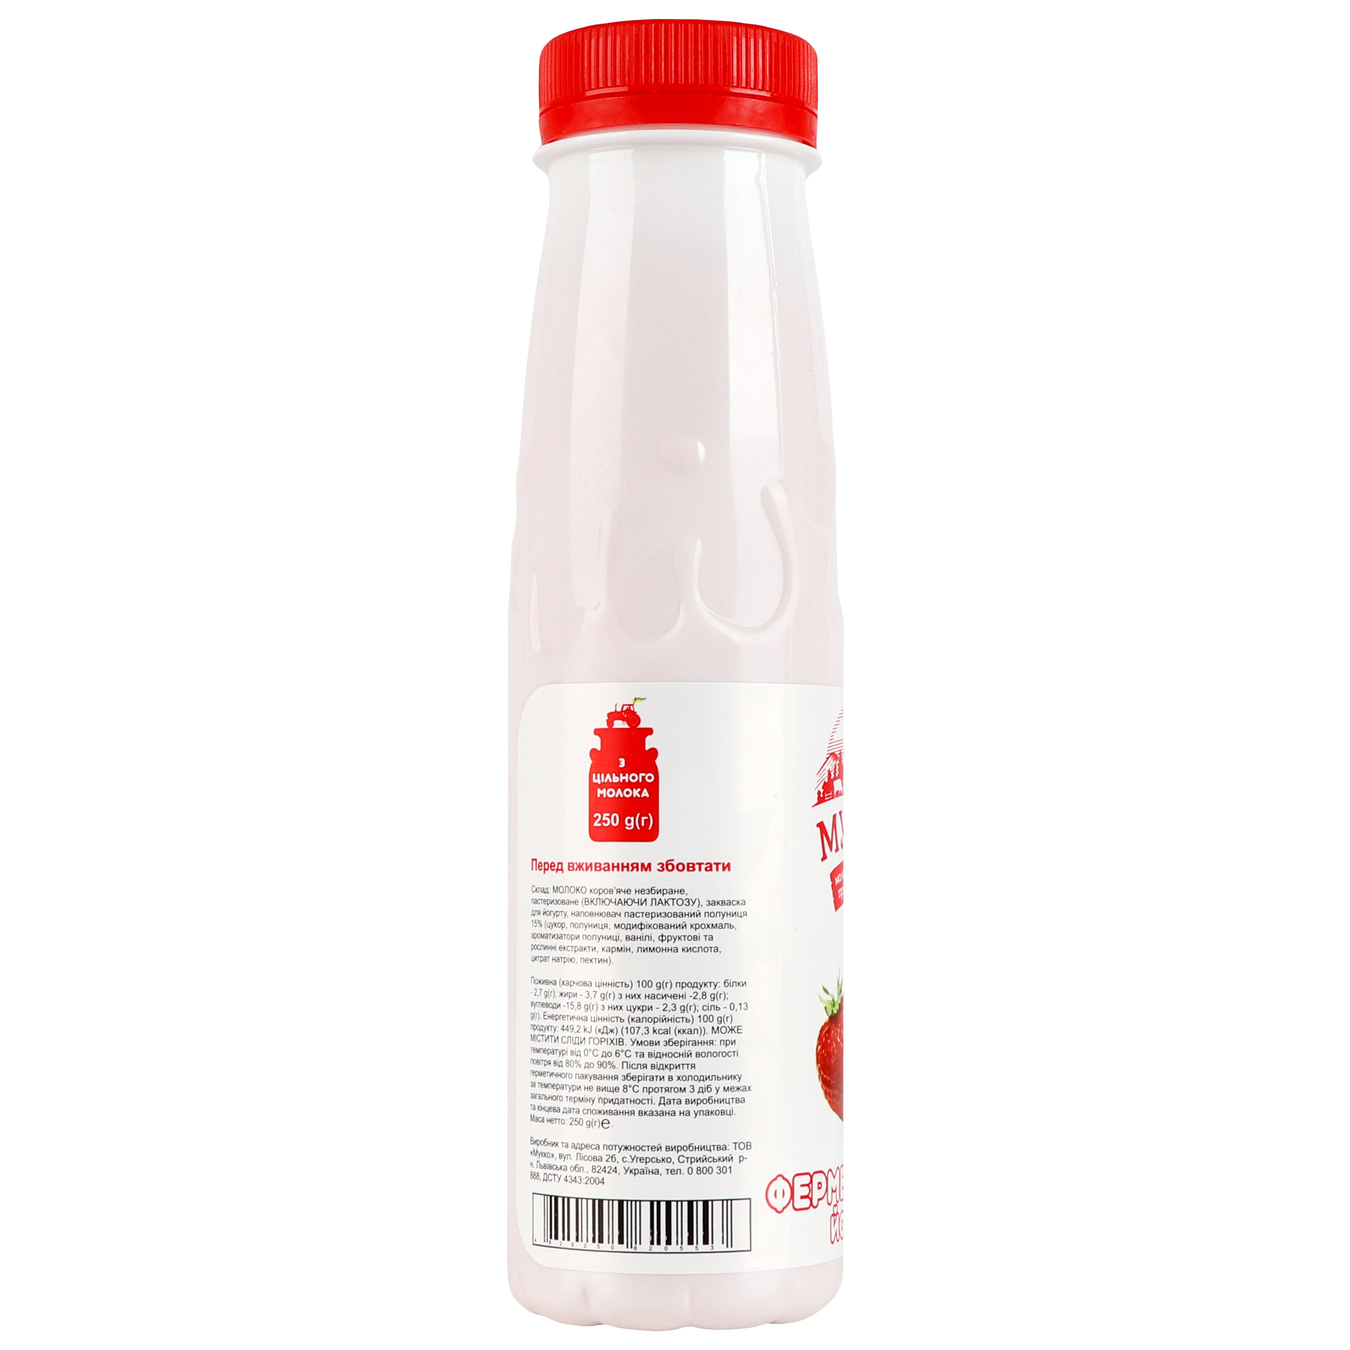 Yogurt Mukko strawberry 3.7% 250g bottle 3